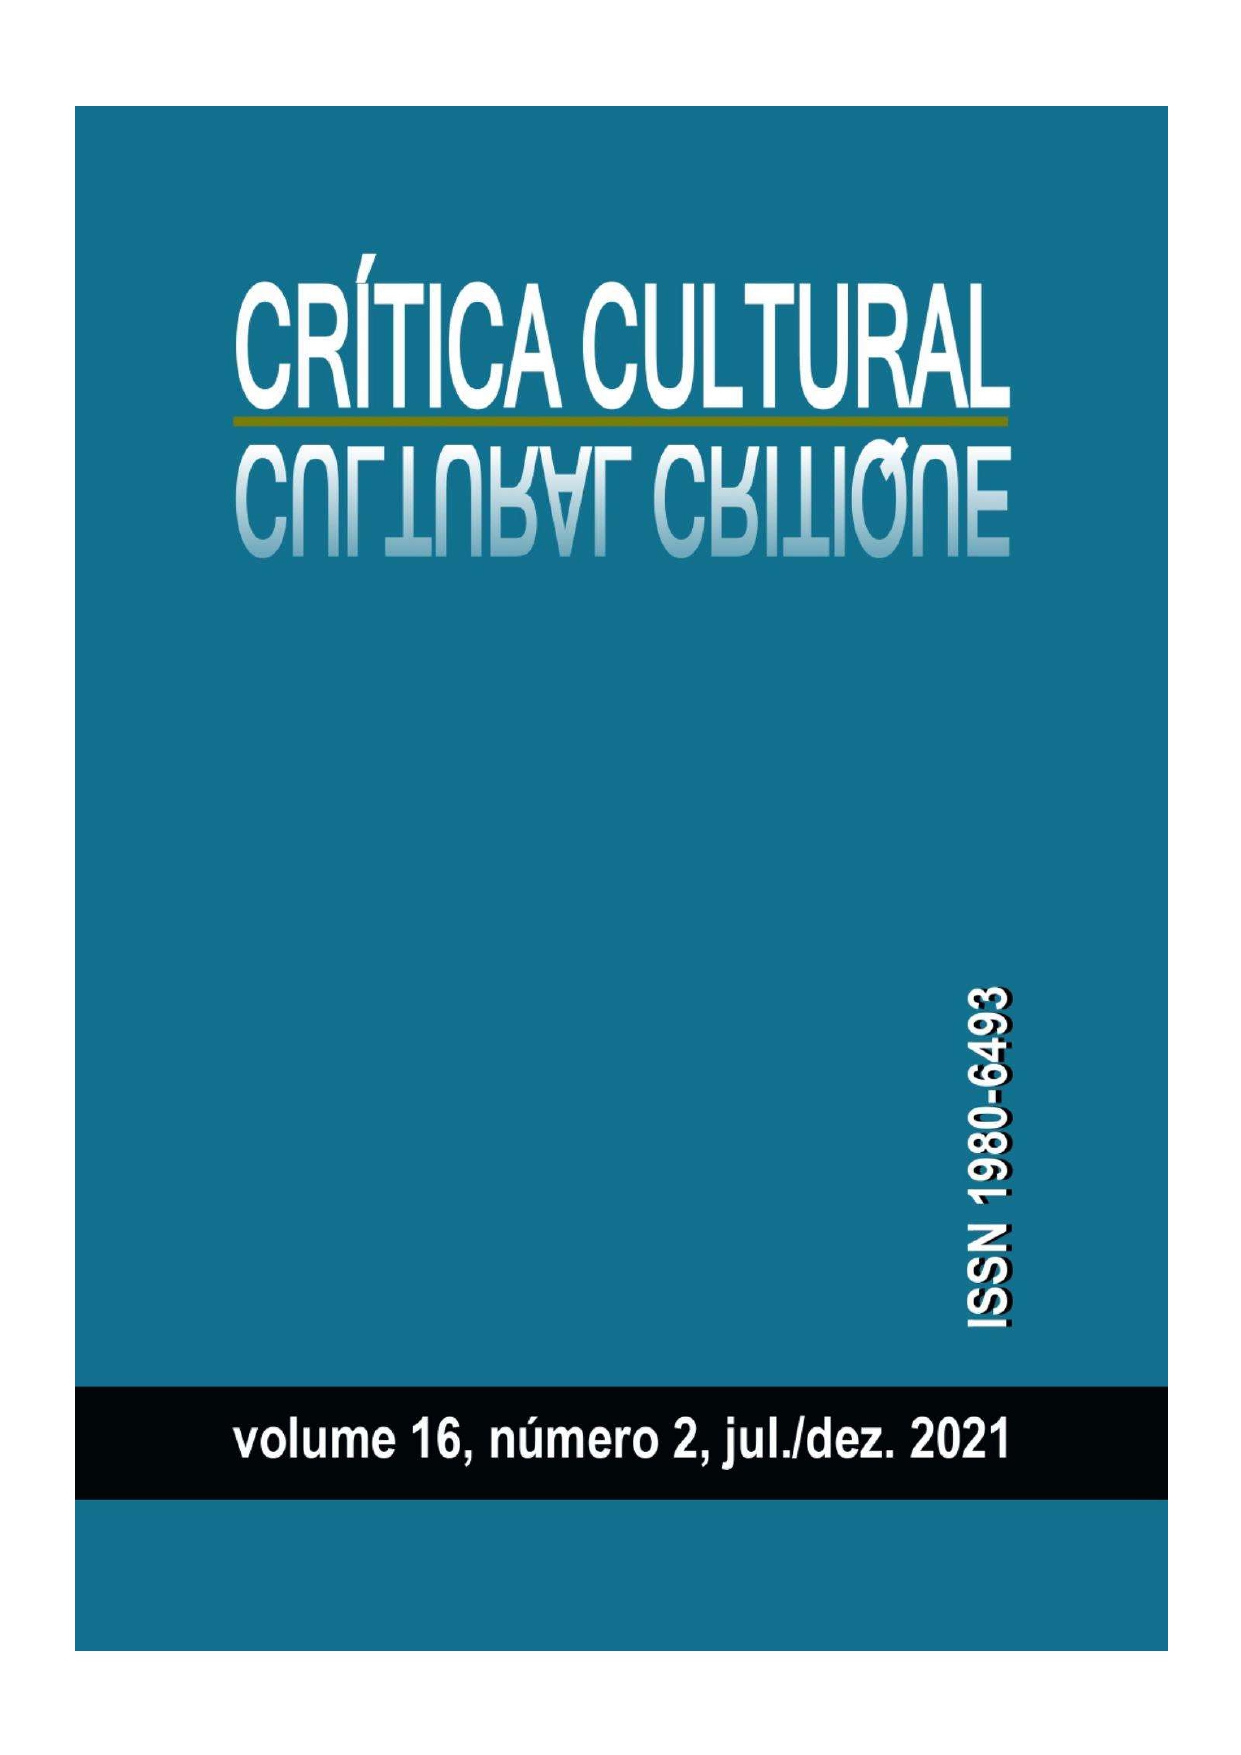 Capa da revista Crítica Cultural, volume 16, número 2, jul./dez. 2021